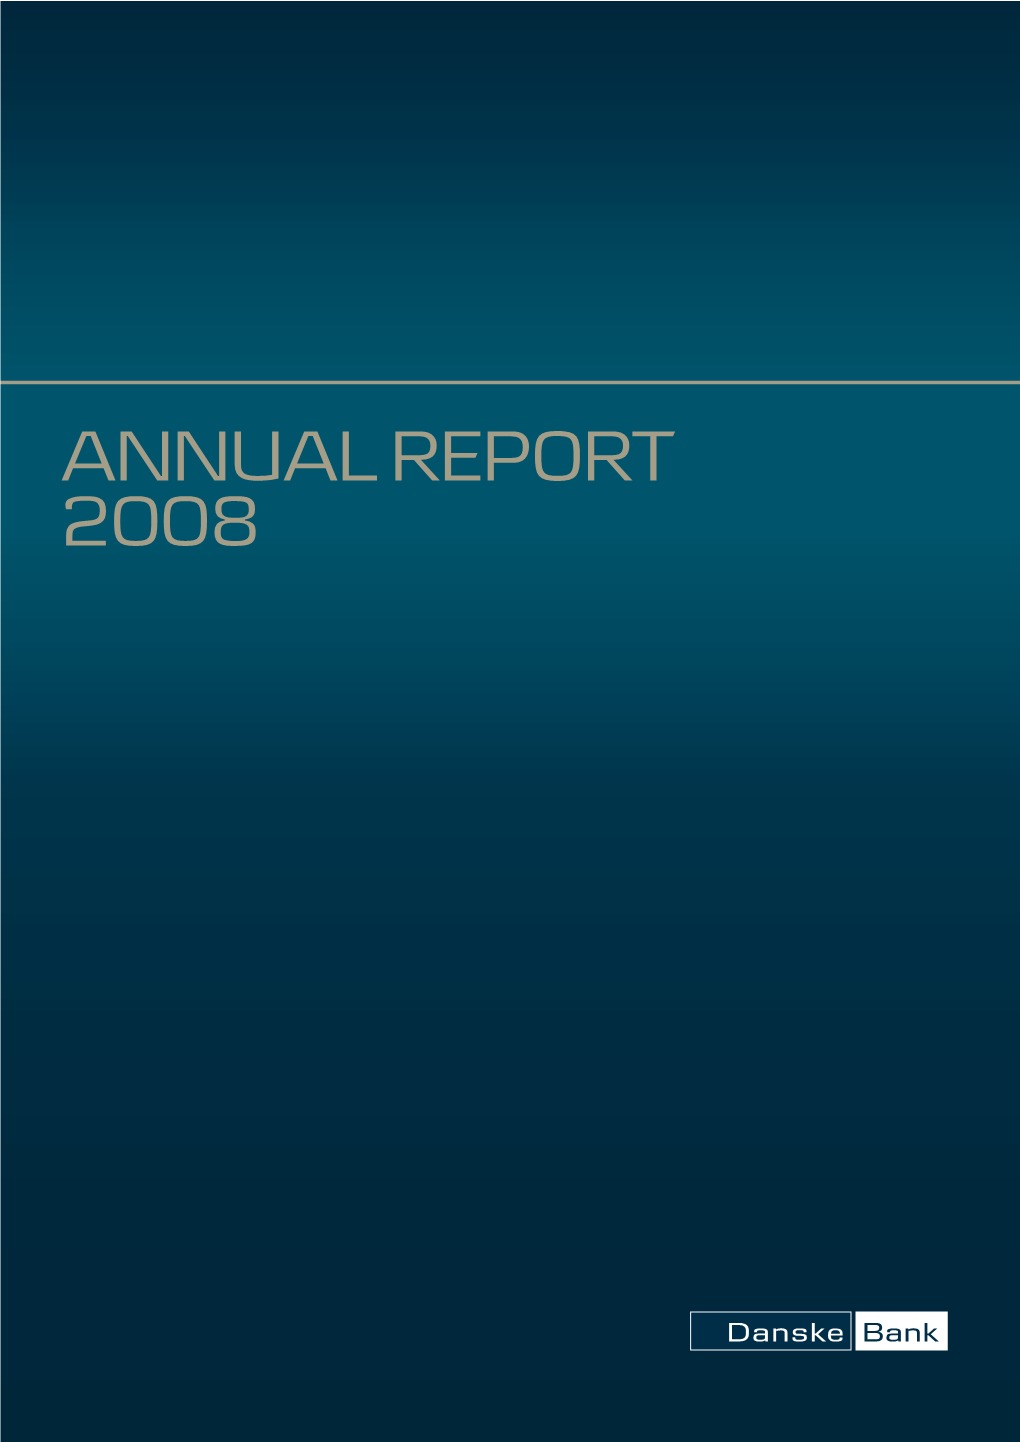 Danske Bank Annual Report 2008 Bankaktiviteter Nordirland 3 Financial Highlights – Danske Bank Group